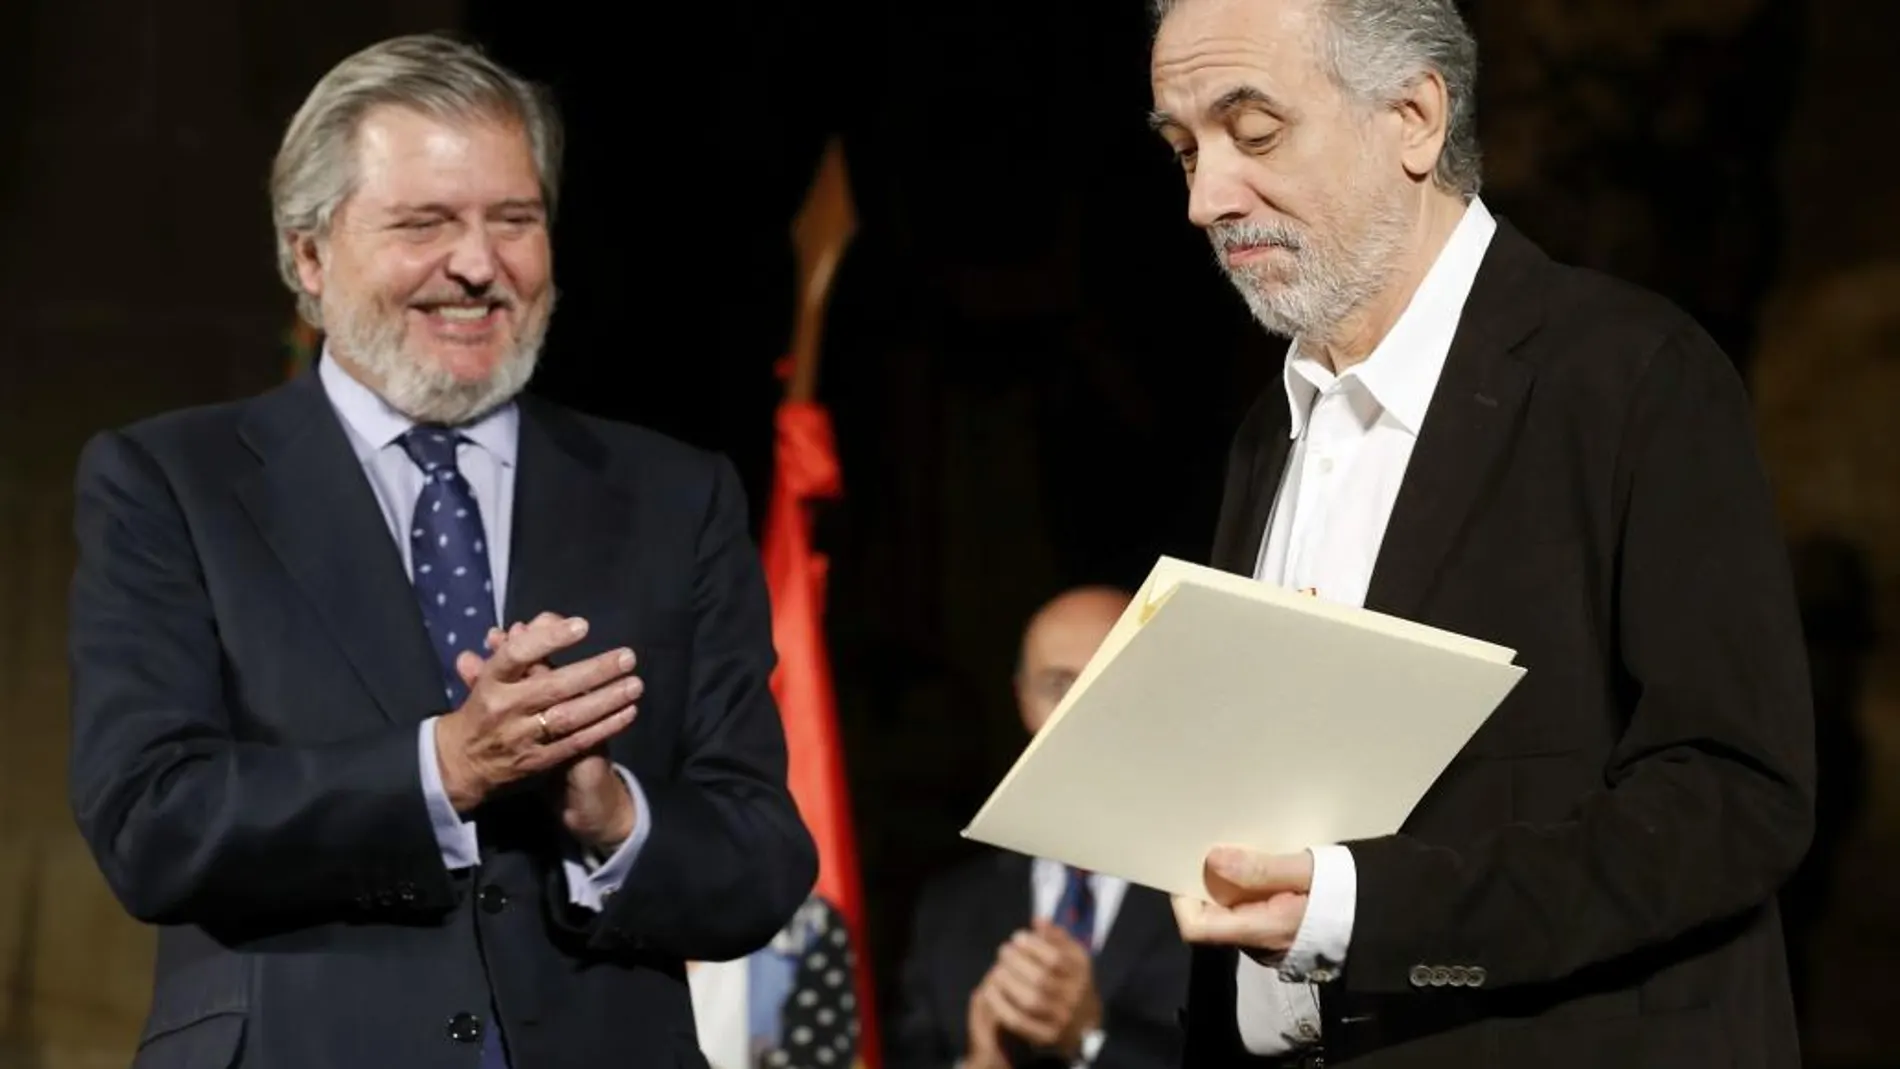 El ministro de Cultura, Íñigo Méndez de Vigo, entrega a Fernando Trueba el Premio Nacional de Cinematografía 2015.